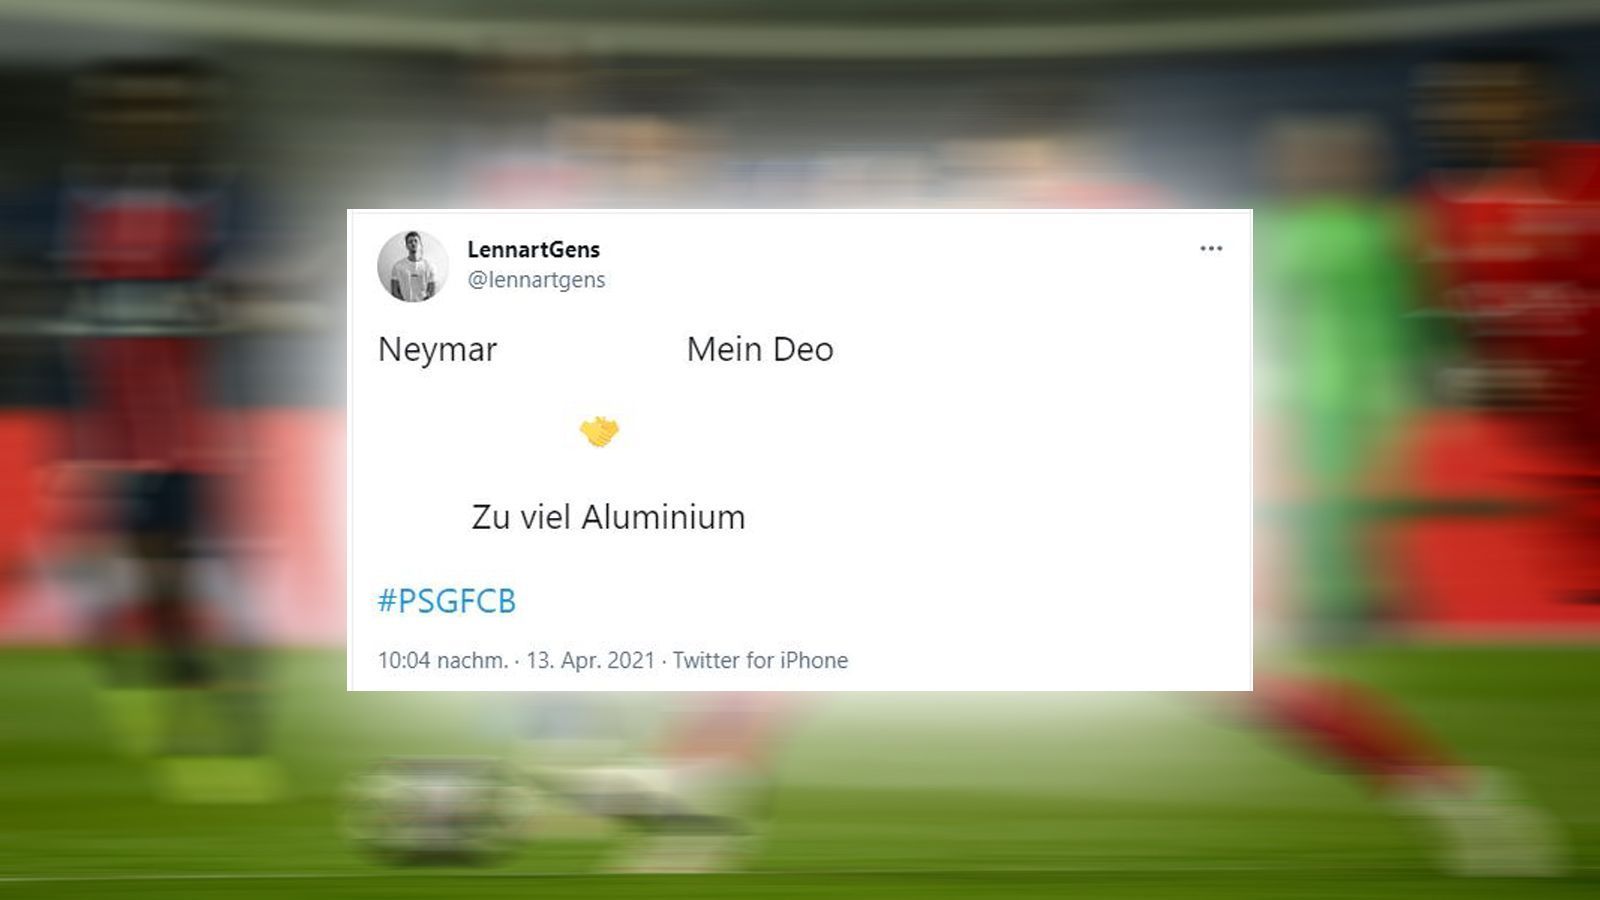 
                <strong>Die Triangel des Spiels</strong><br>
                Neymar - Deo - Aluminium. Mehr braucht es nicht zu sagen. 
              